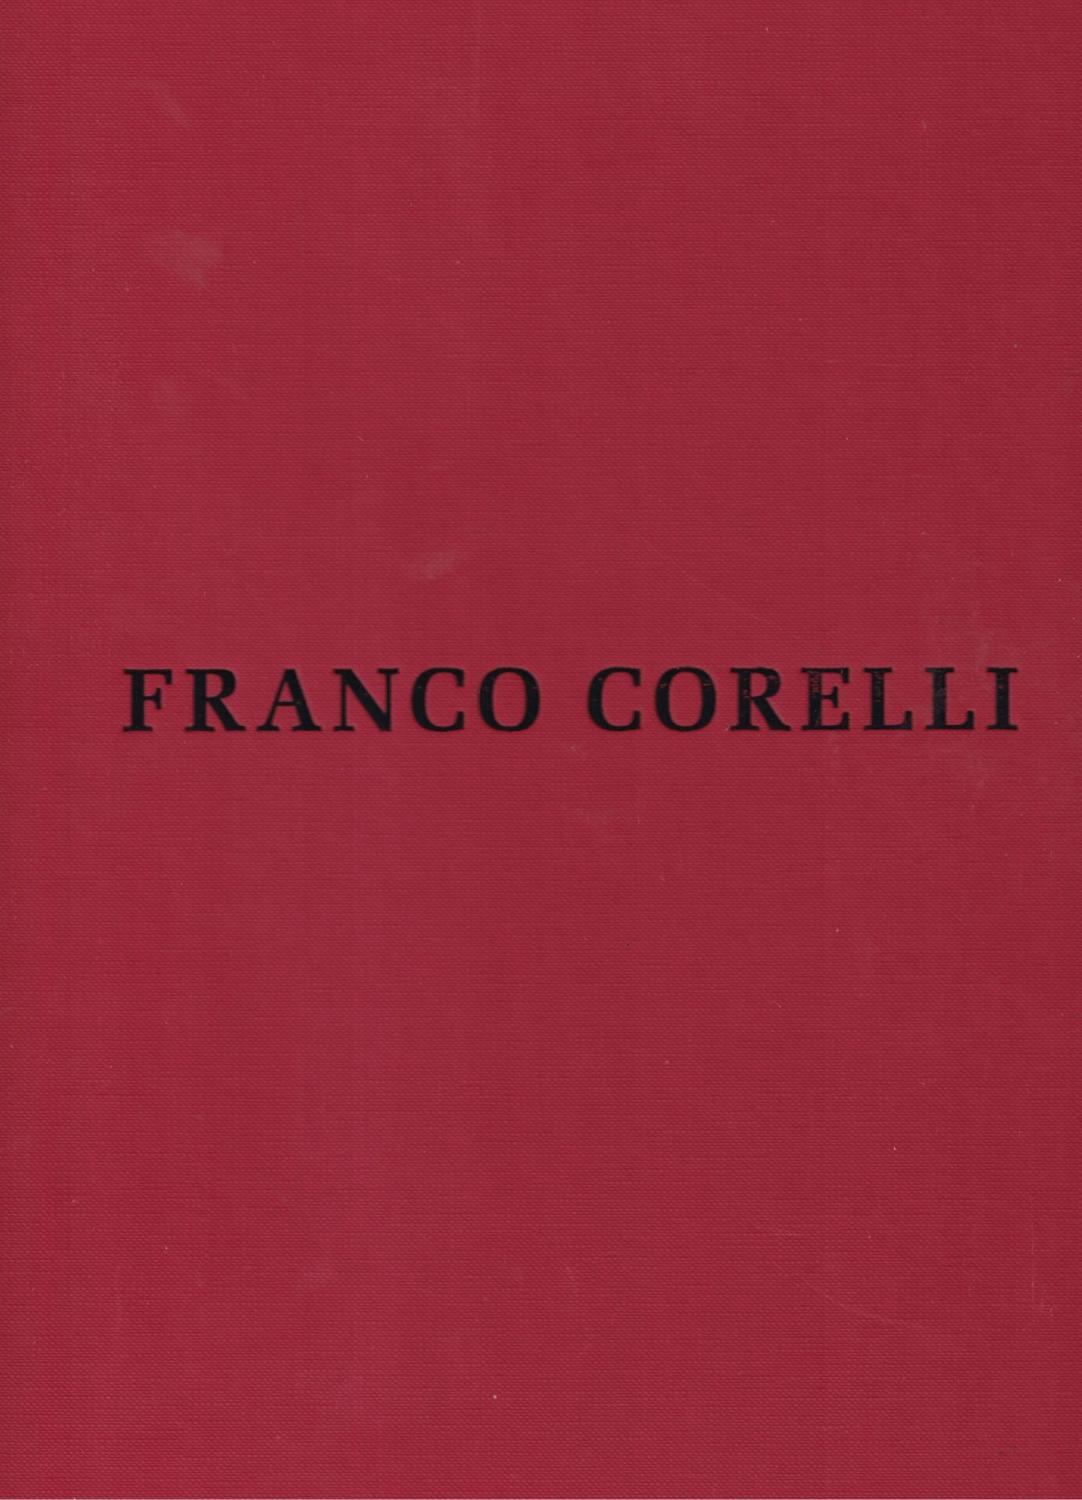 Franco Corelli: L'uomo, la voce, l'arte - LANDINI, Giancarlo